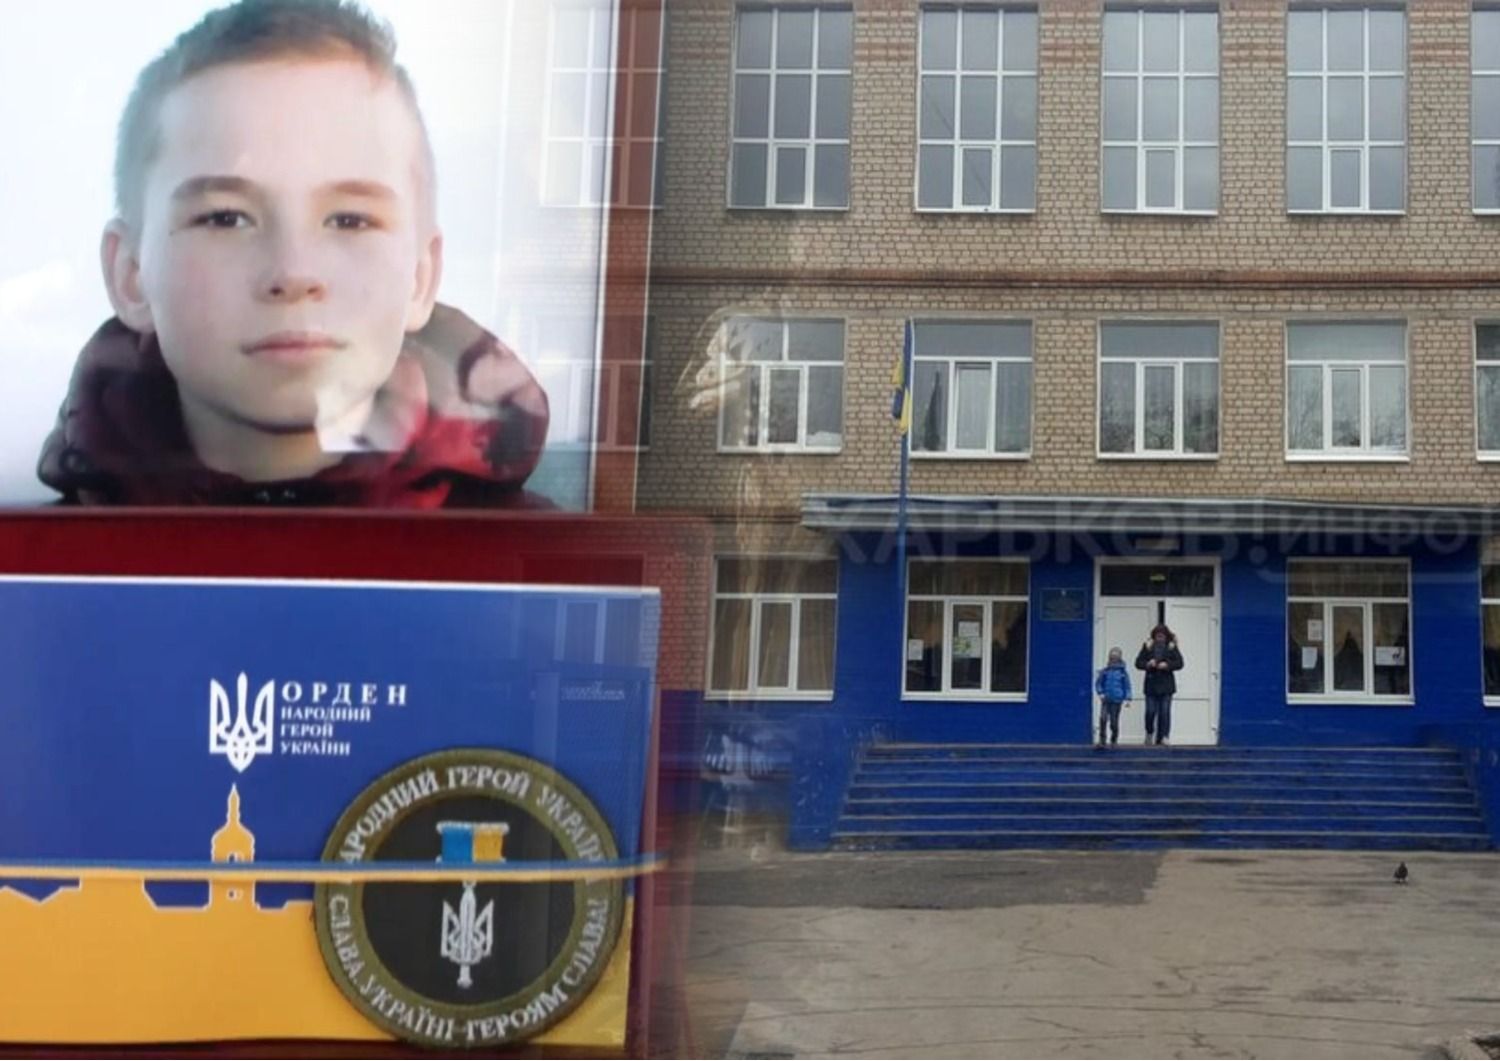 Даня Дидик - переименуют ли школу в Харькове в честь погибшего во время теракта ученика - Образование